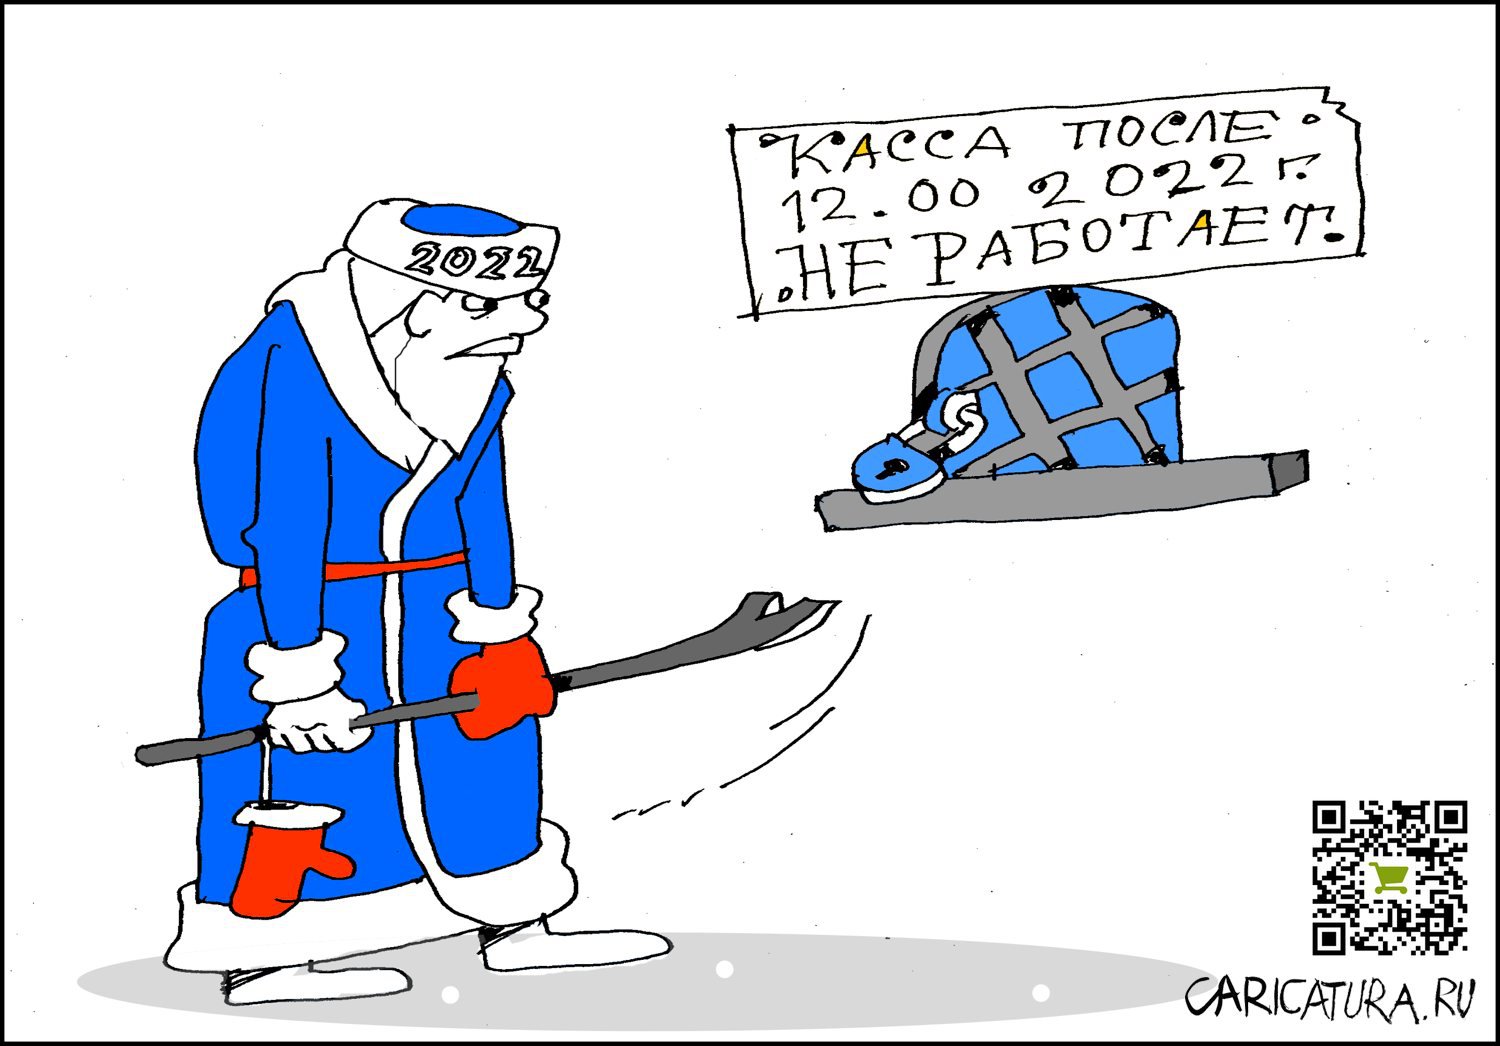 Карикатура "Старый хрыч", Александр Уваров